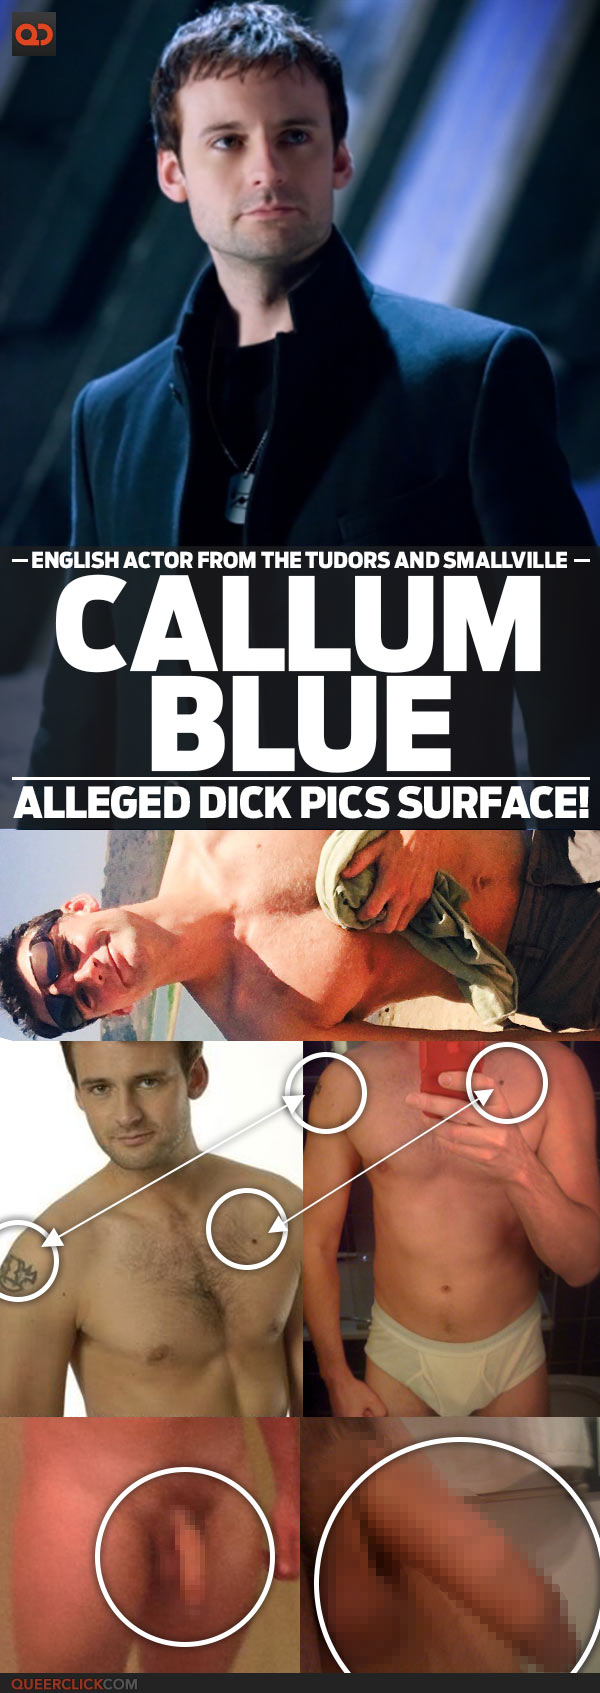 Callum blue sex scene